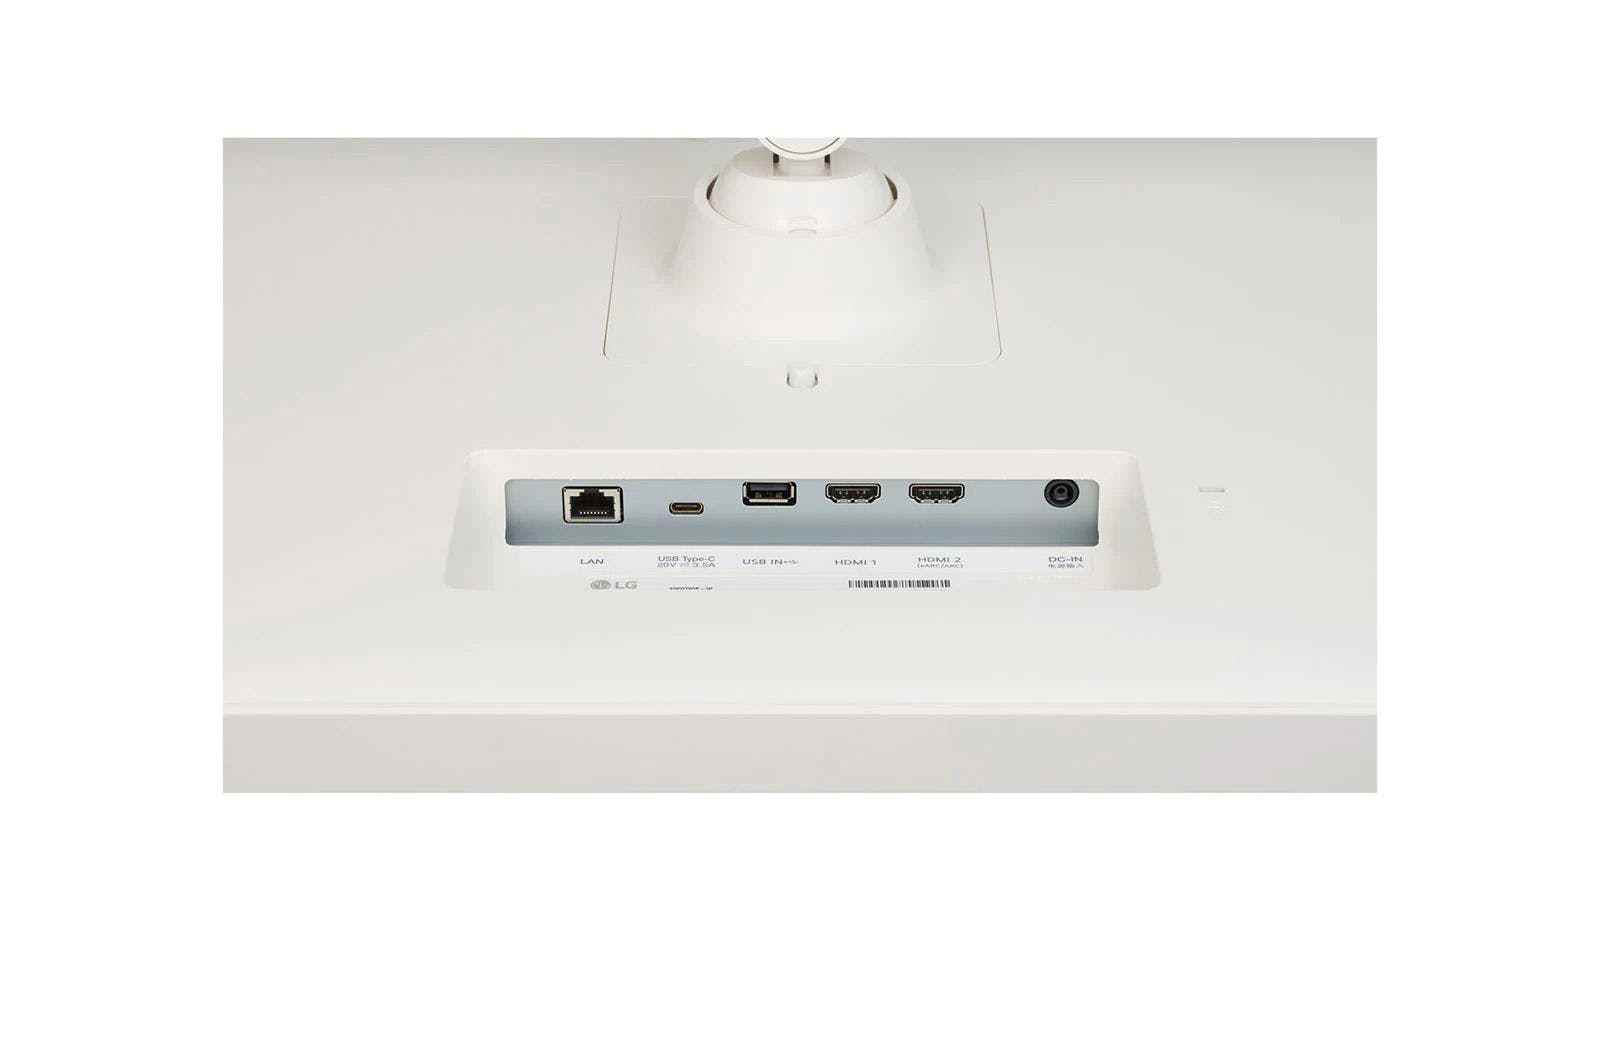 HDMI eARC ile bir ses çubuğu bağlayabilir ve ayrıca TV uygulamalarının akış için daha güvenilir bir bağlantıya sahip olabilmesi için Ethernet bağlayabilirsiniz.